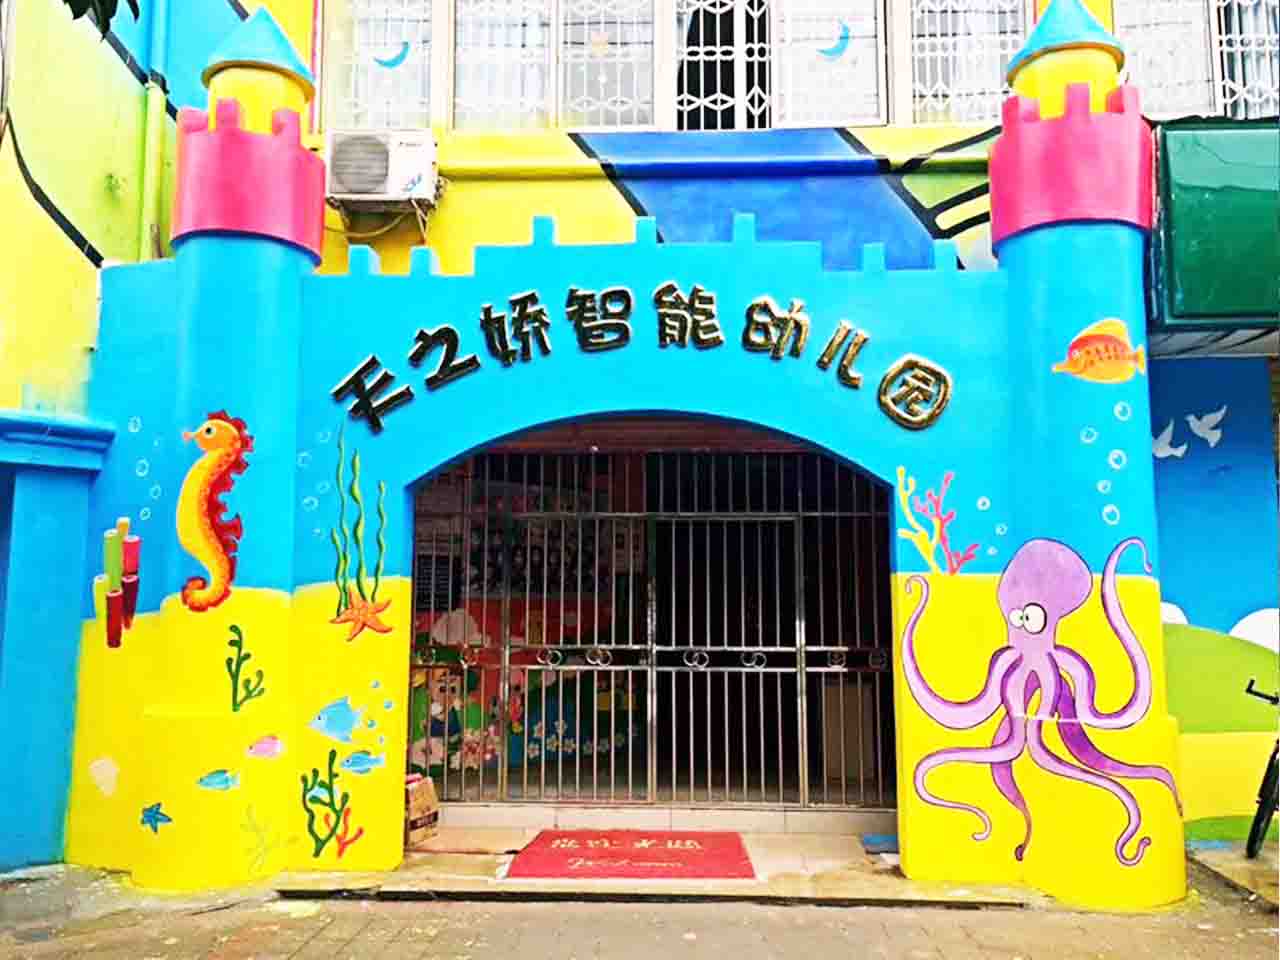 幼儿校园动物园游乐场卡通海底墙绘壁画彩绘涂鸦手绘成都澜泉文化